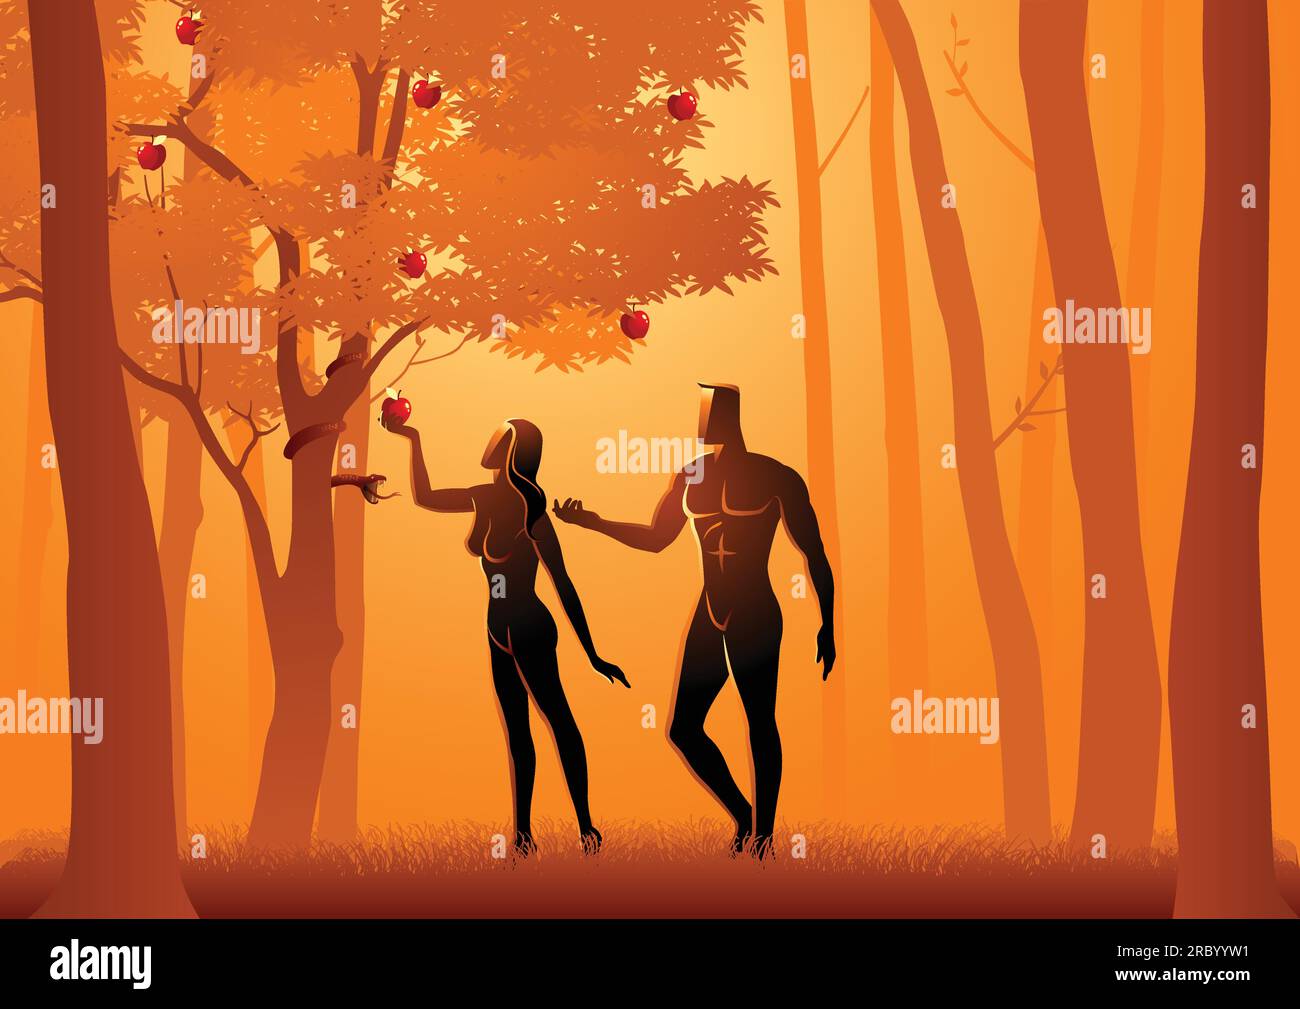 Illustrazione vettoriale biblica di Adamo ed Eva, un serpente inganna Eva nel mangiare frutta dall'albero proibito Illustrazione Vettoriale